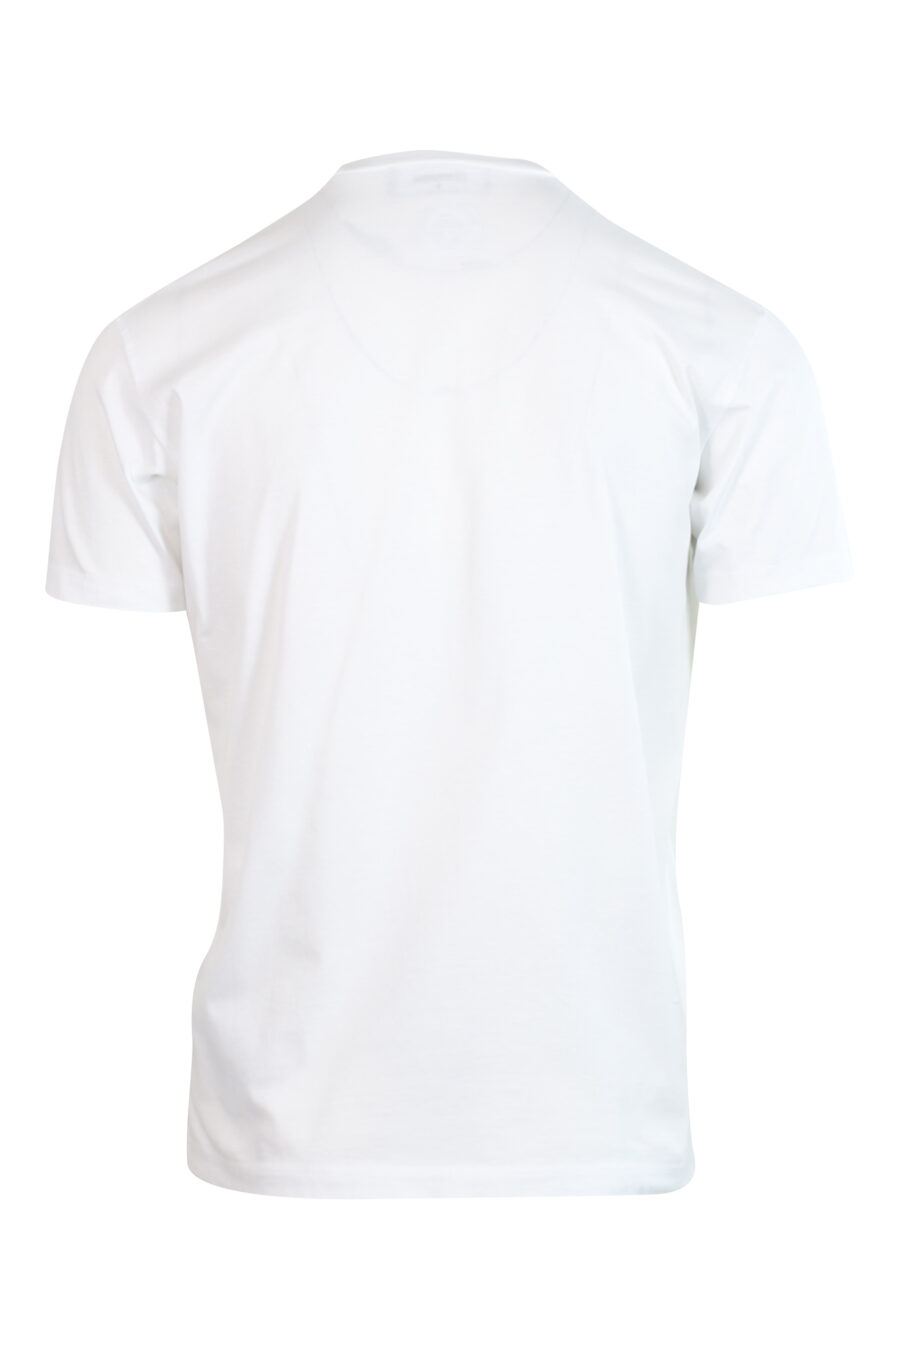 Weißes T-Shirt mit türkisem und fuchsiafarbenem "icon pixeled" Maxilogo - 8052134981191 2